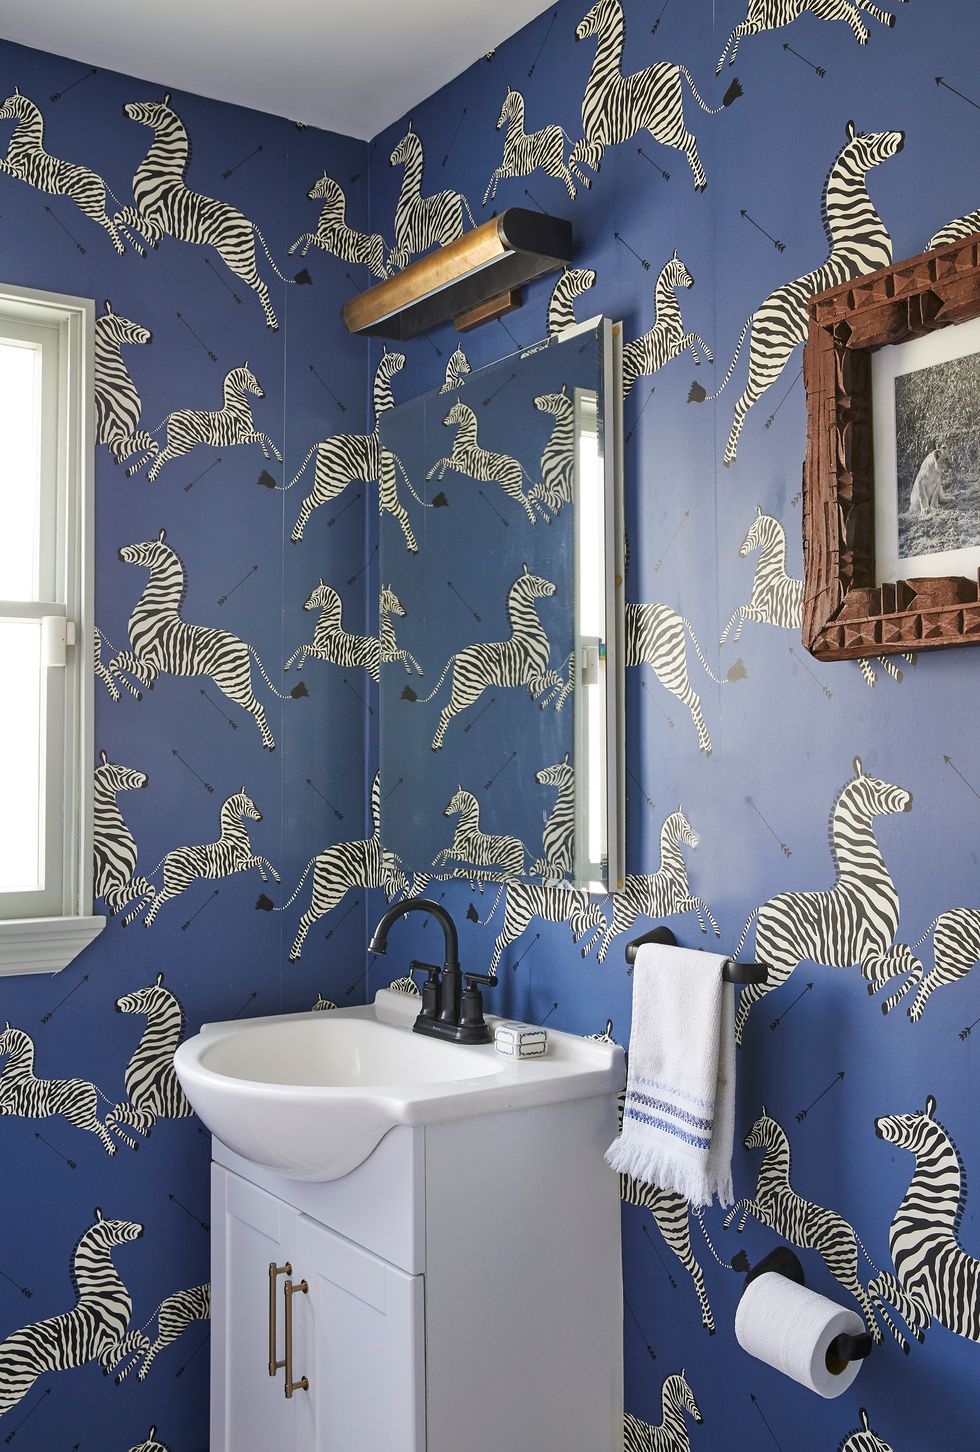 bathroom with zebra wallpaper